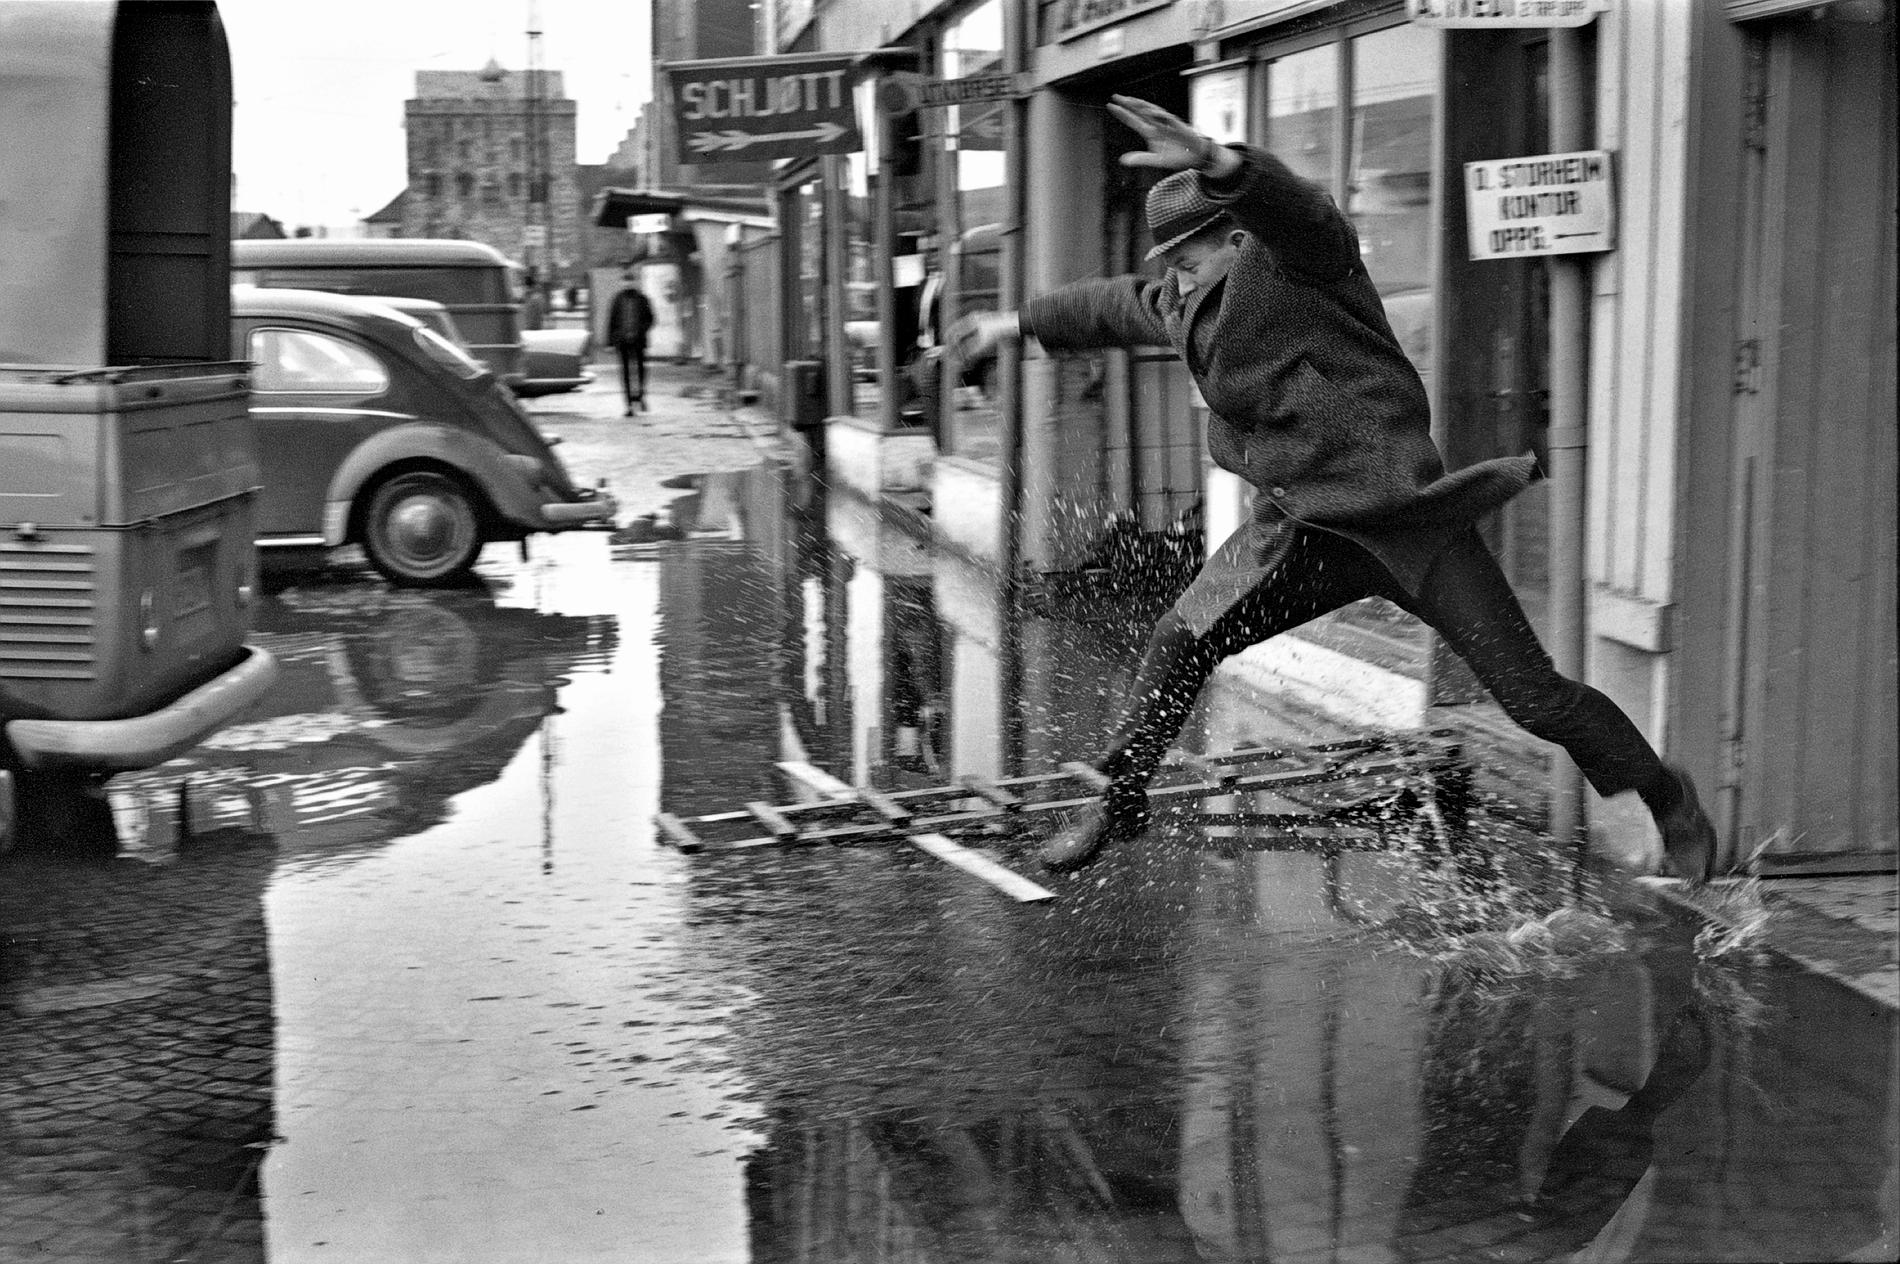 I mars 1967 kom en av de verste springfloene i Bryggens historie. Butikkene sto under vann, de historiske bygningene også. På bildet er det BTs journa-list Harry Frøysland som prøver å komme tørrskodd unna.